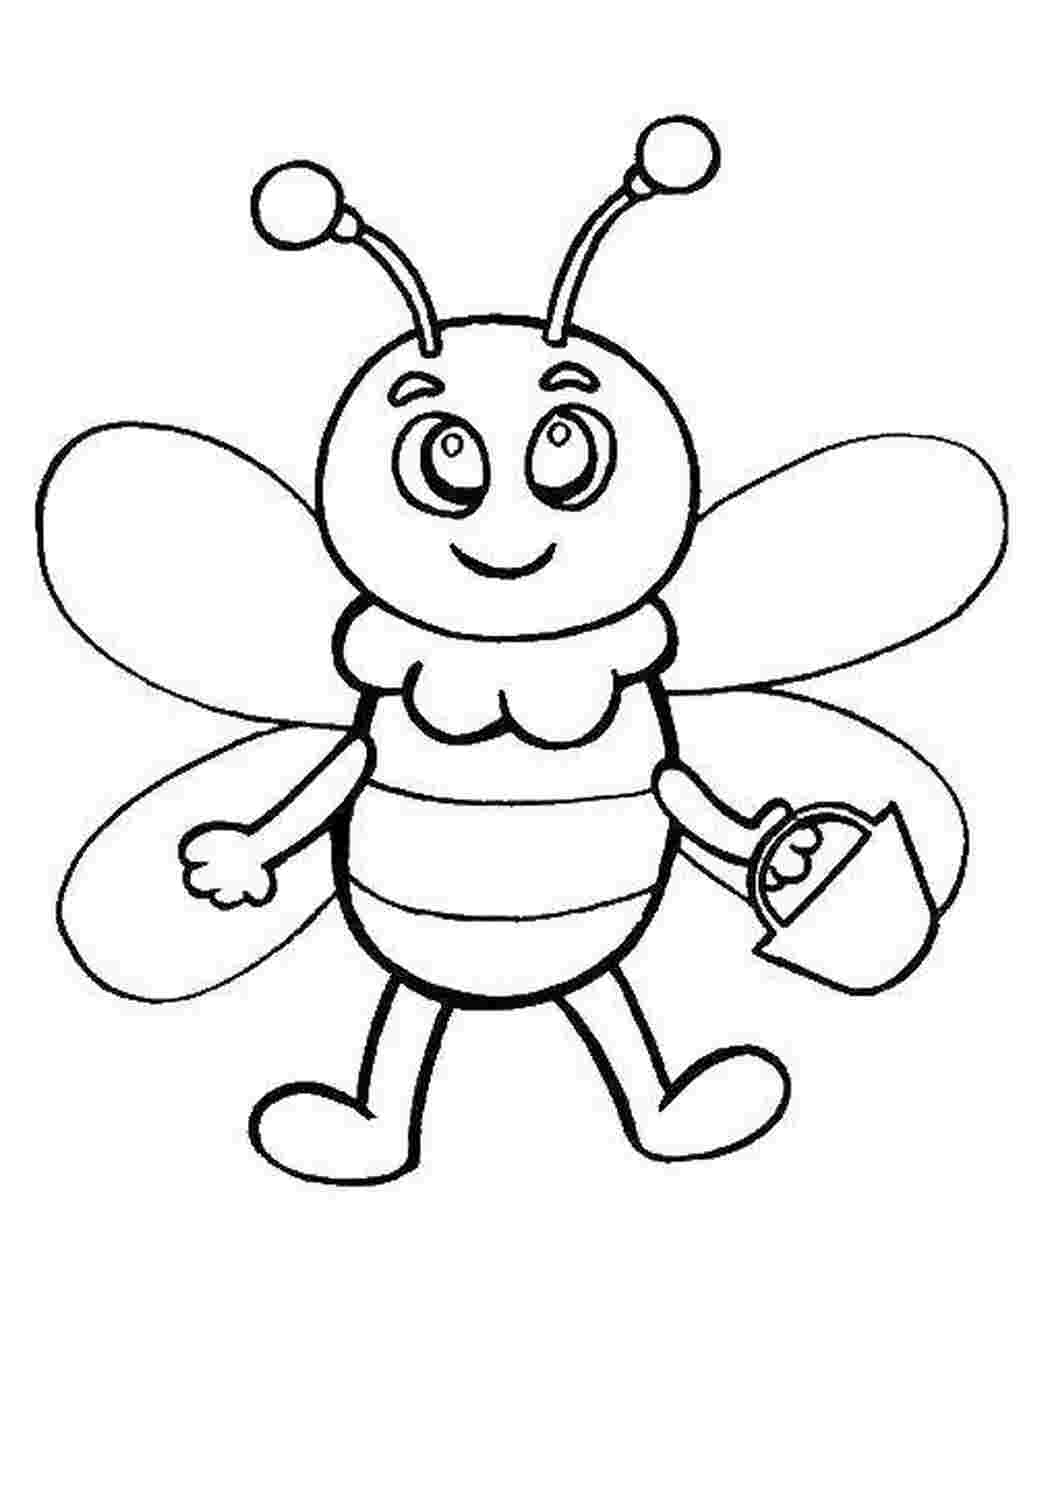 Пчелка раскраска распечатать. Пчела раскраска. Раскраска пчёлка для детей. Пчела раскраска для детей. Пчела картинка для детей раскраска.